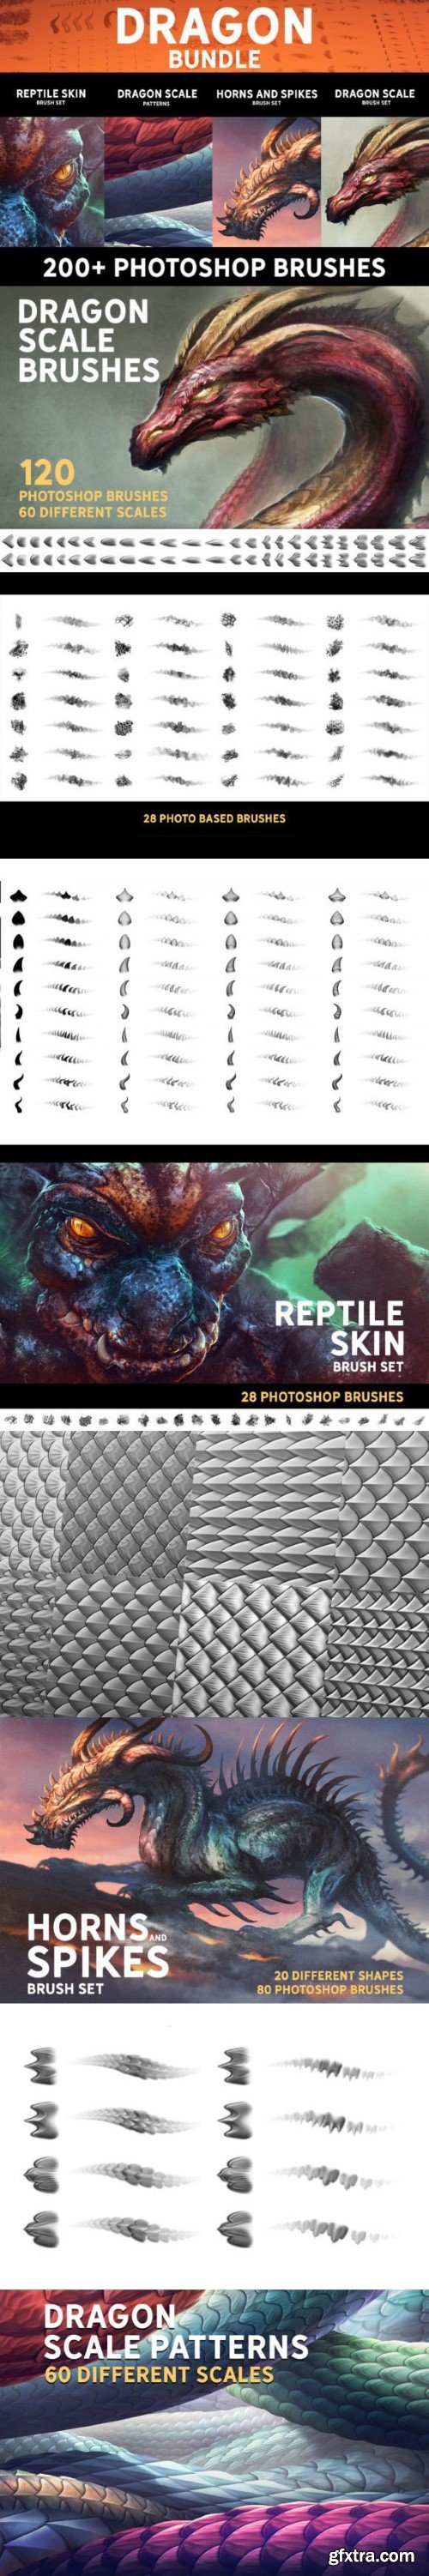 Dragon Bundle - 200+ Photoshop Brushes